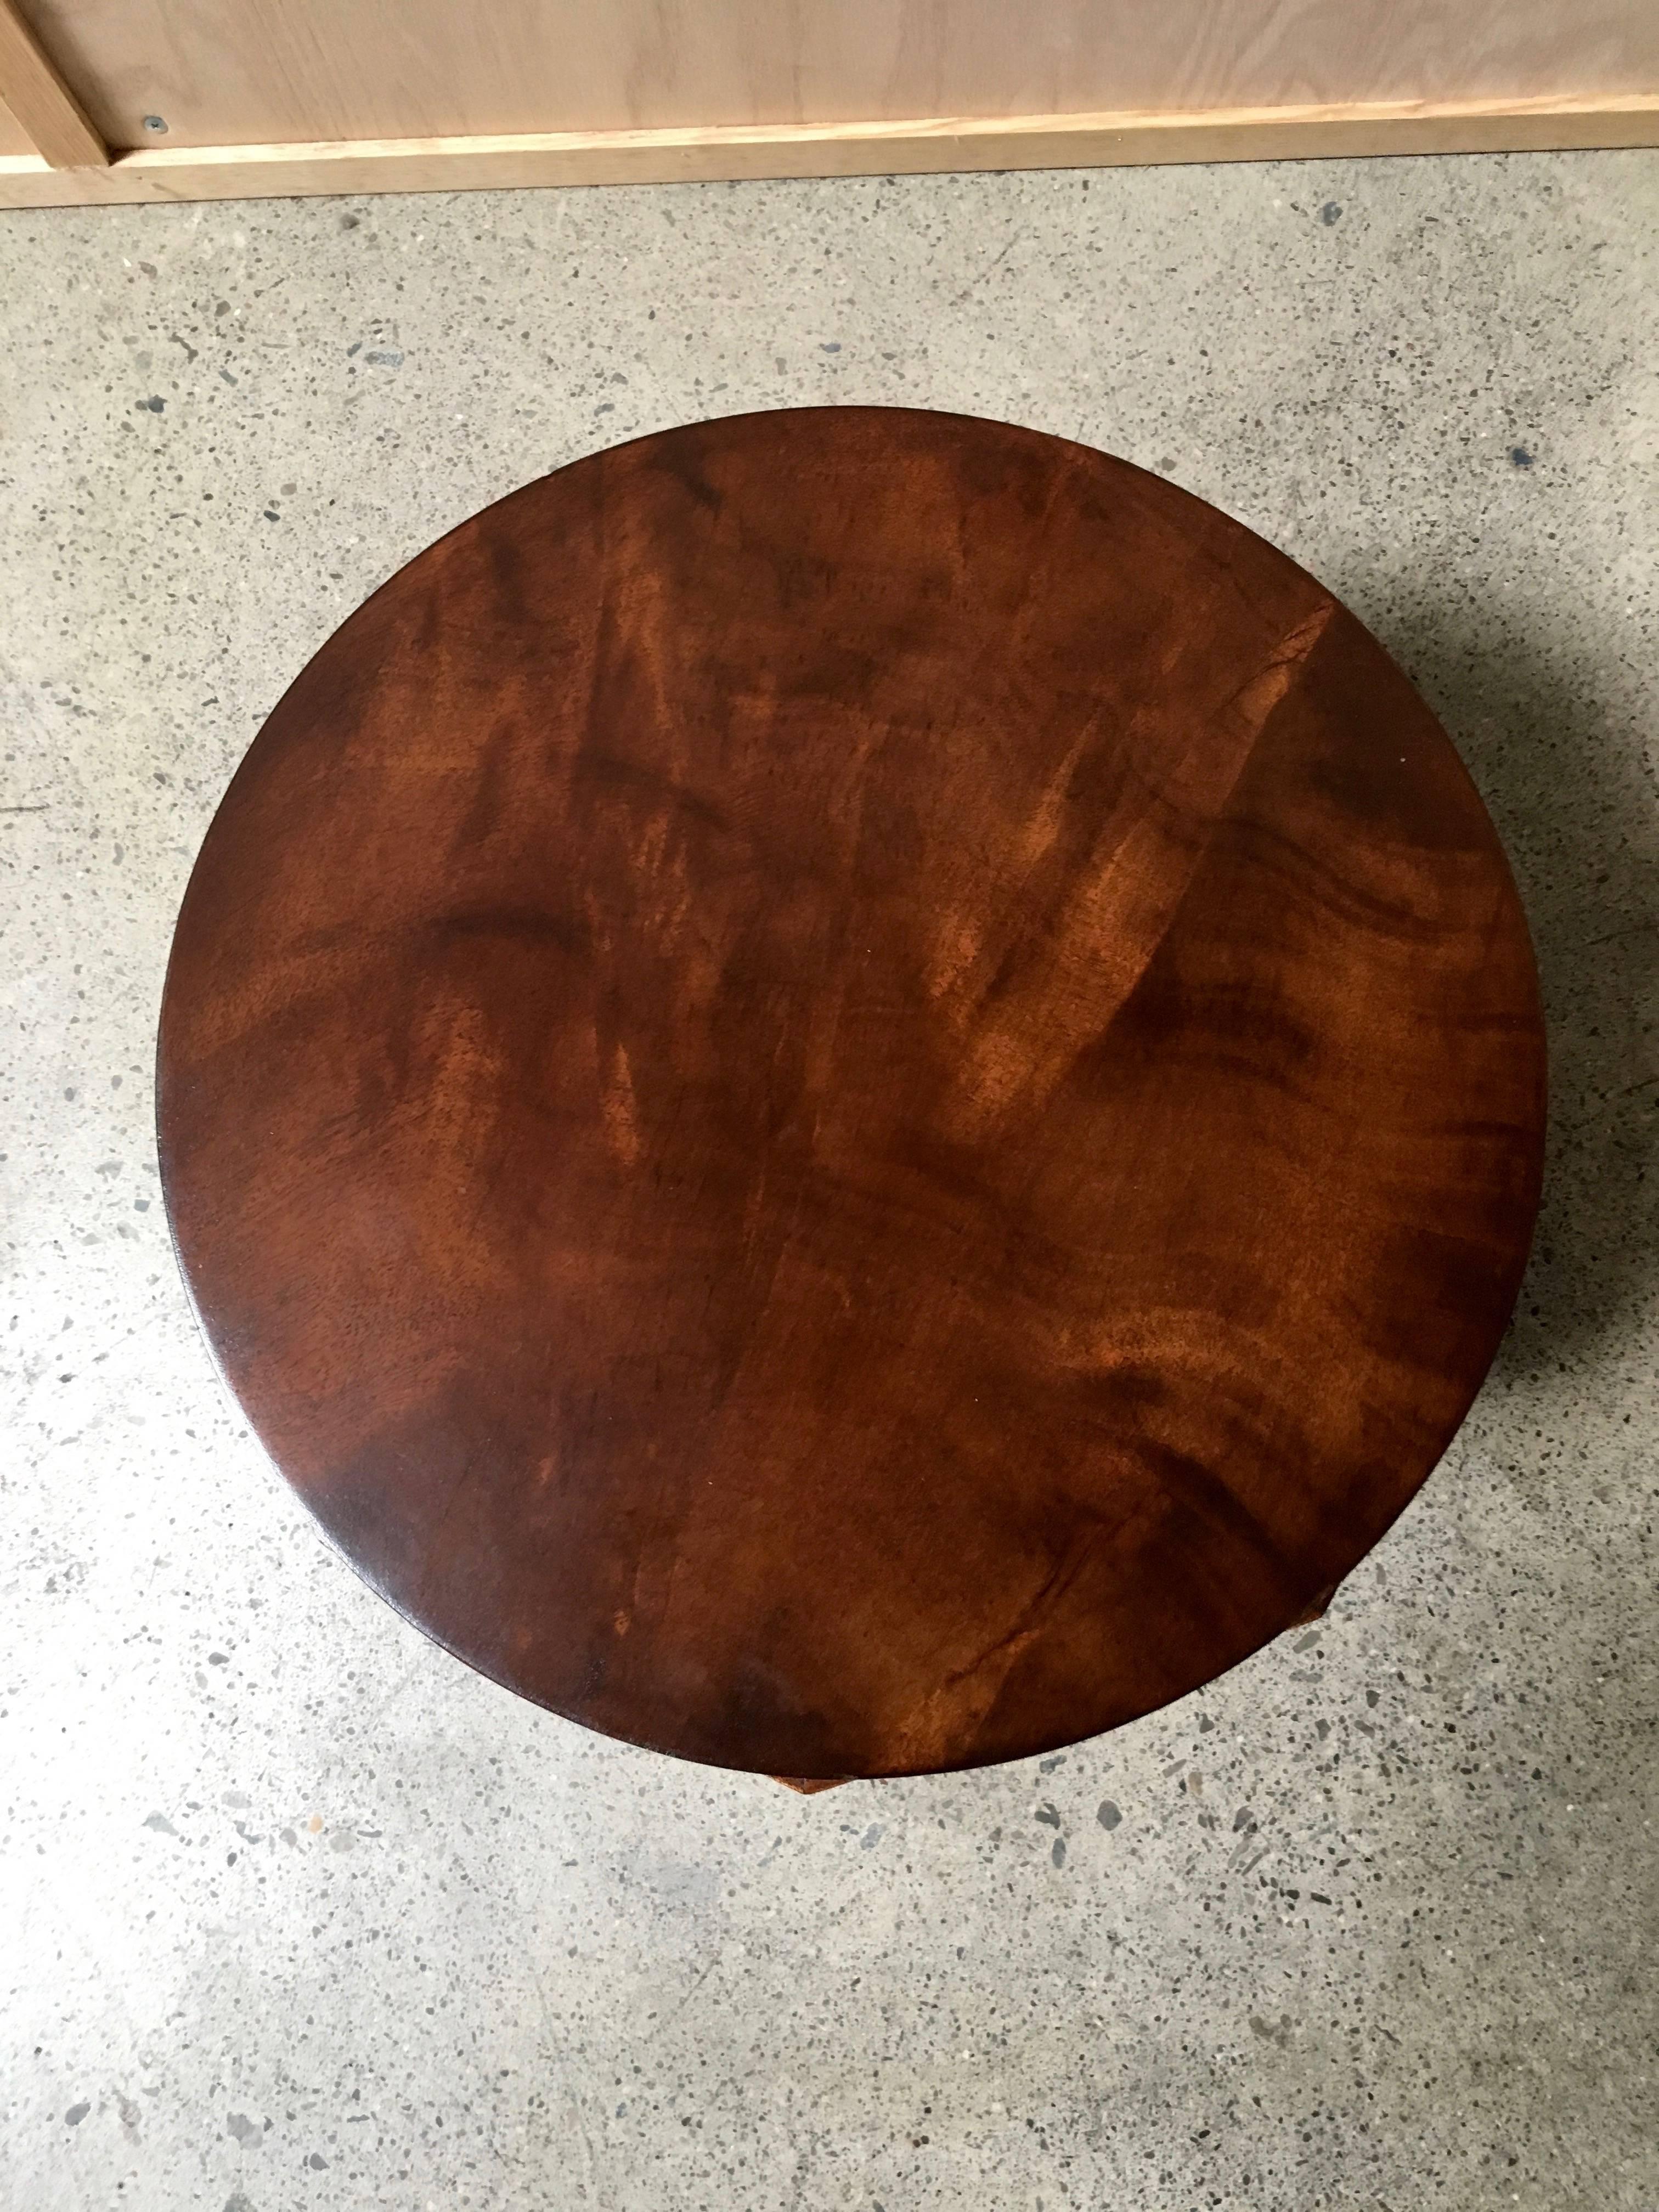 Dunbar walnut burl side table by Edward Wormley.